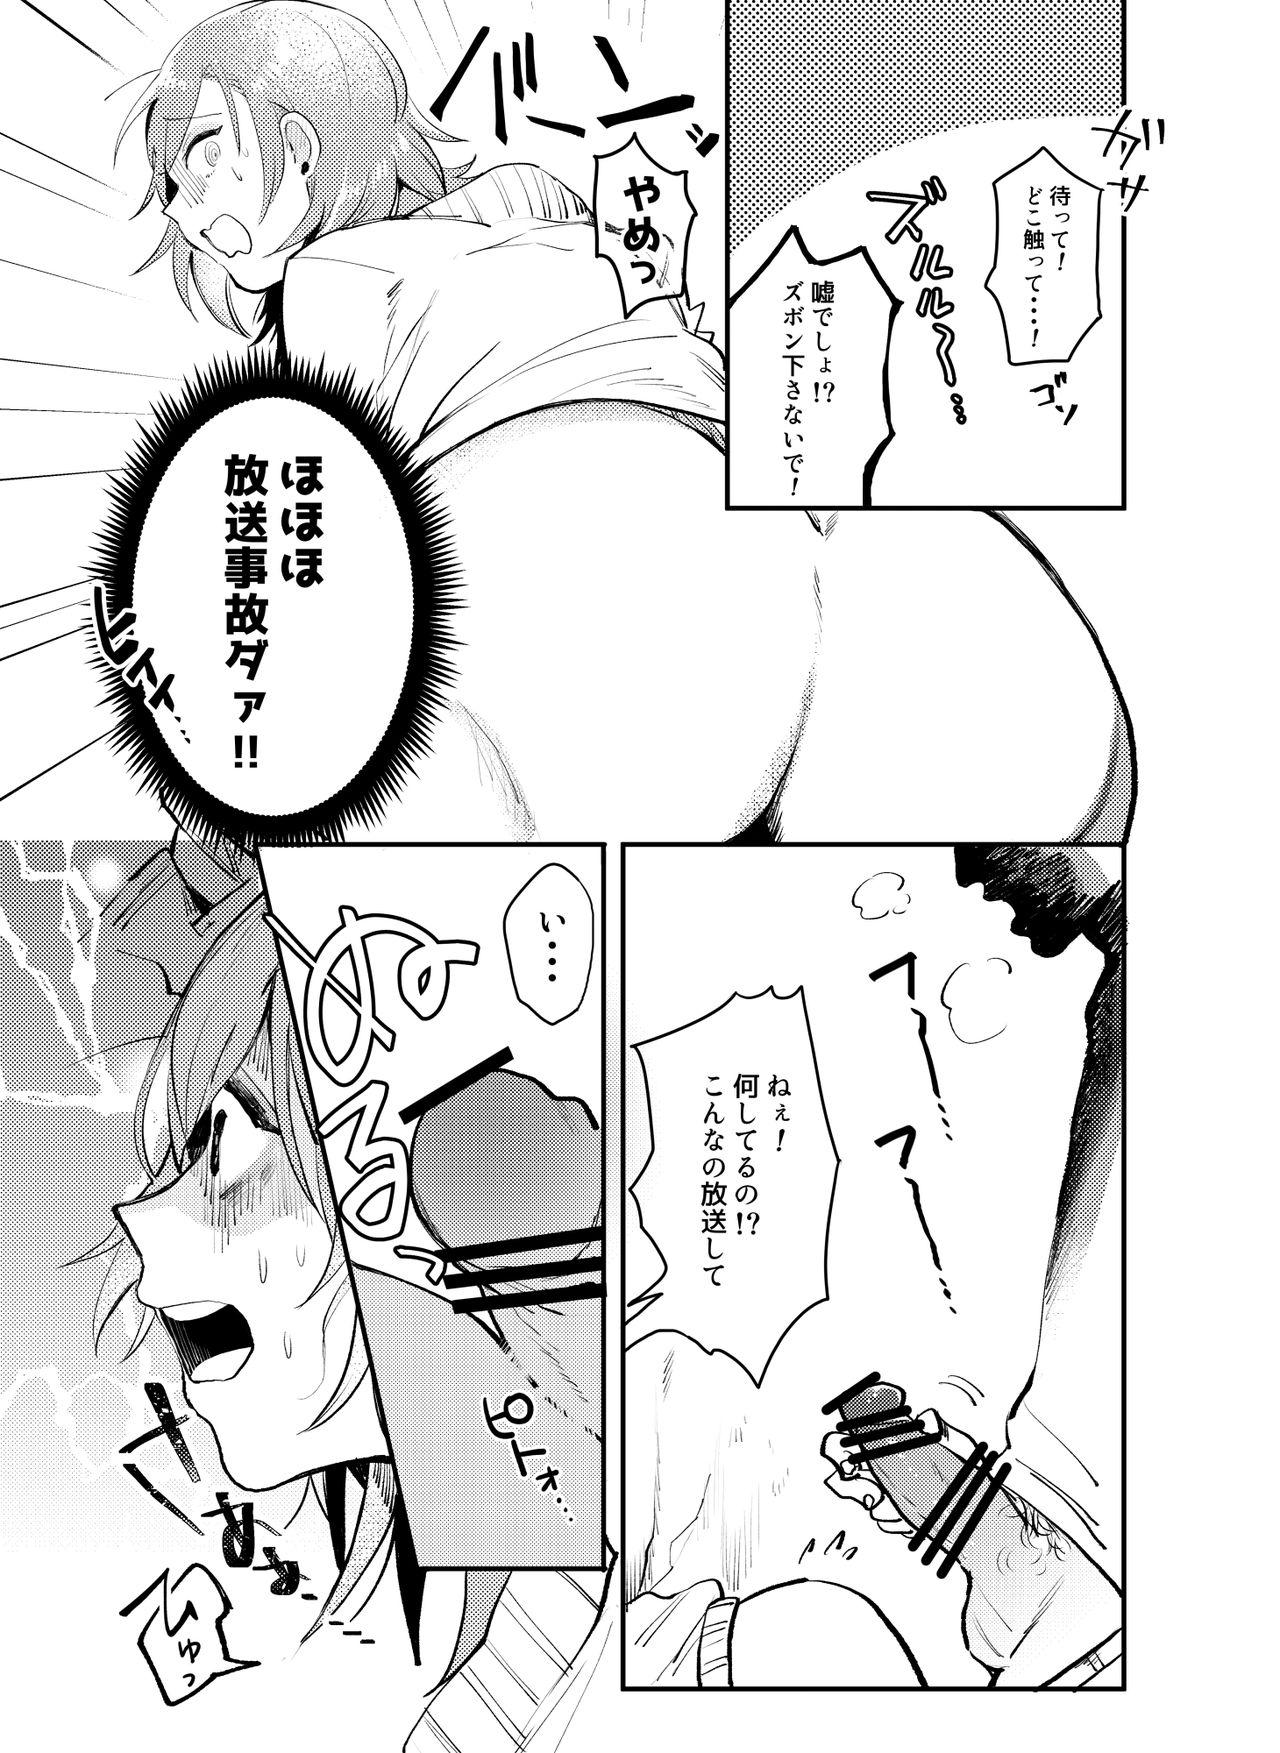 Ex Gf Kabeshiri Ren-chan!! - Uta no prince-sama Banho - Page 4